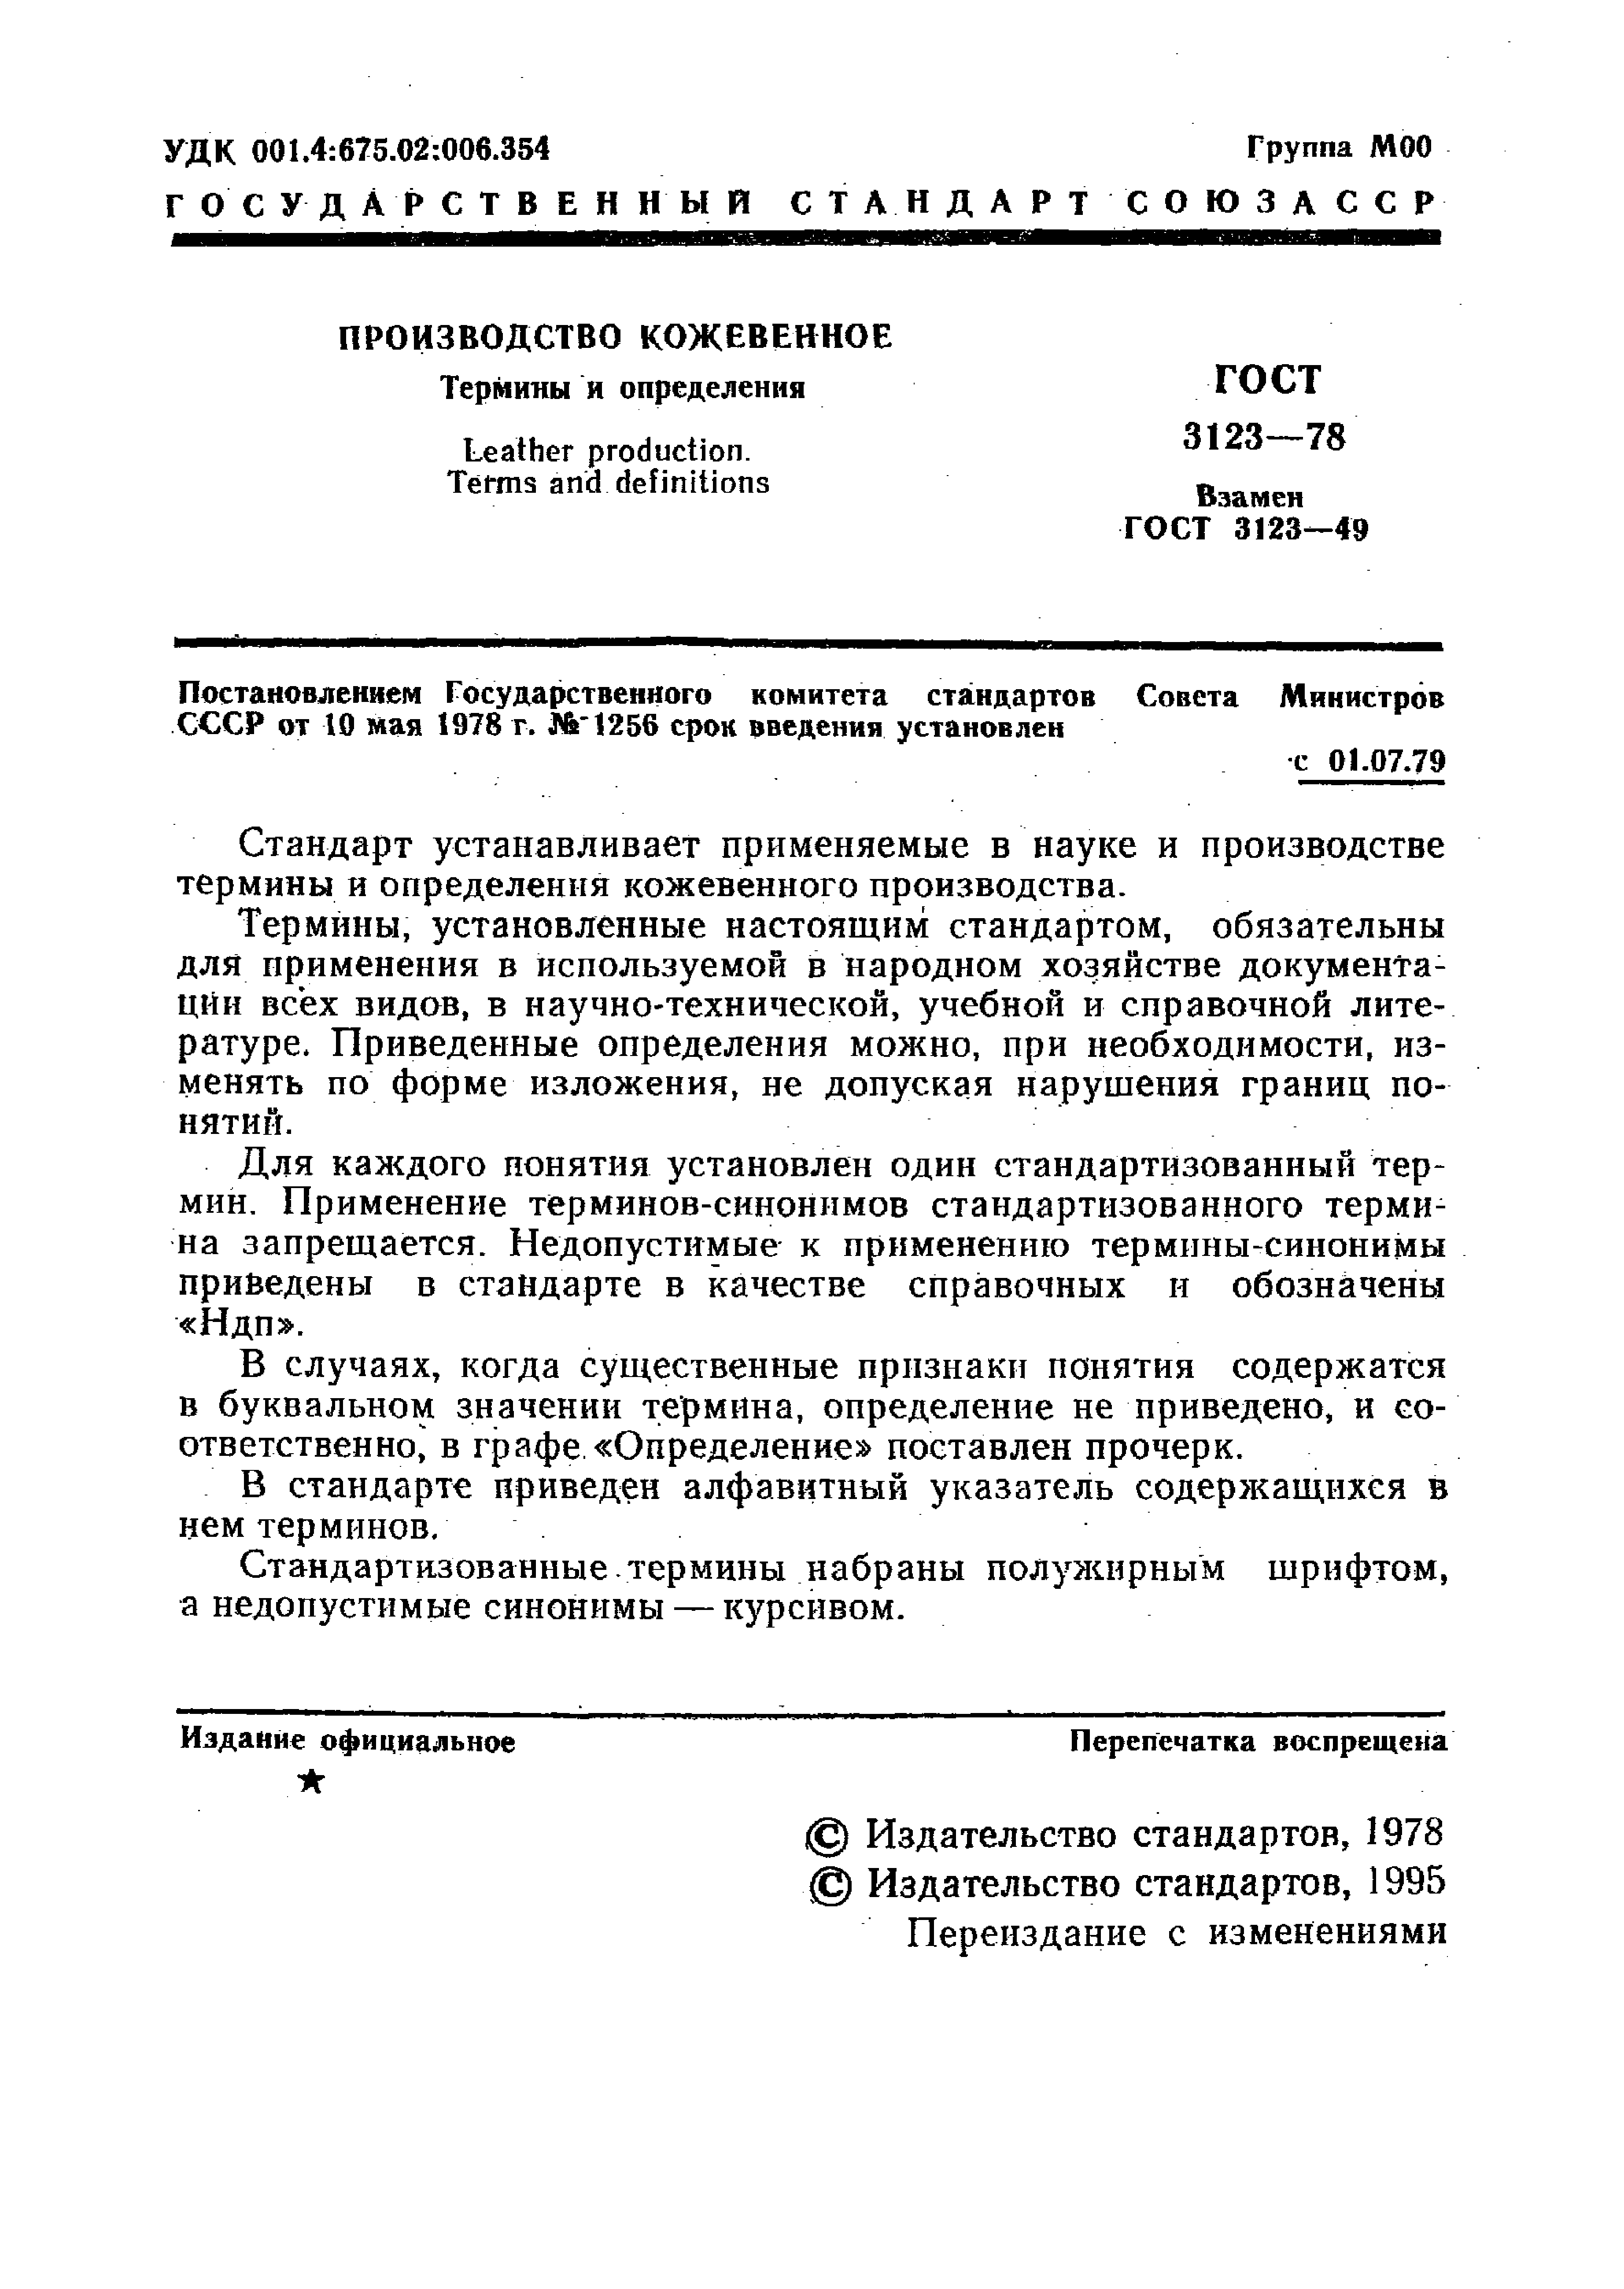 GOST_3123-78_Proizvodstvo_kozhevennoe_Terminy_i_opredelenia (1)_page-0003.jpg